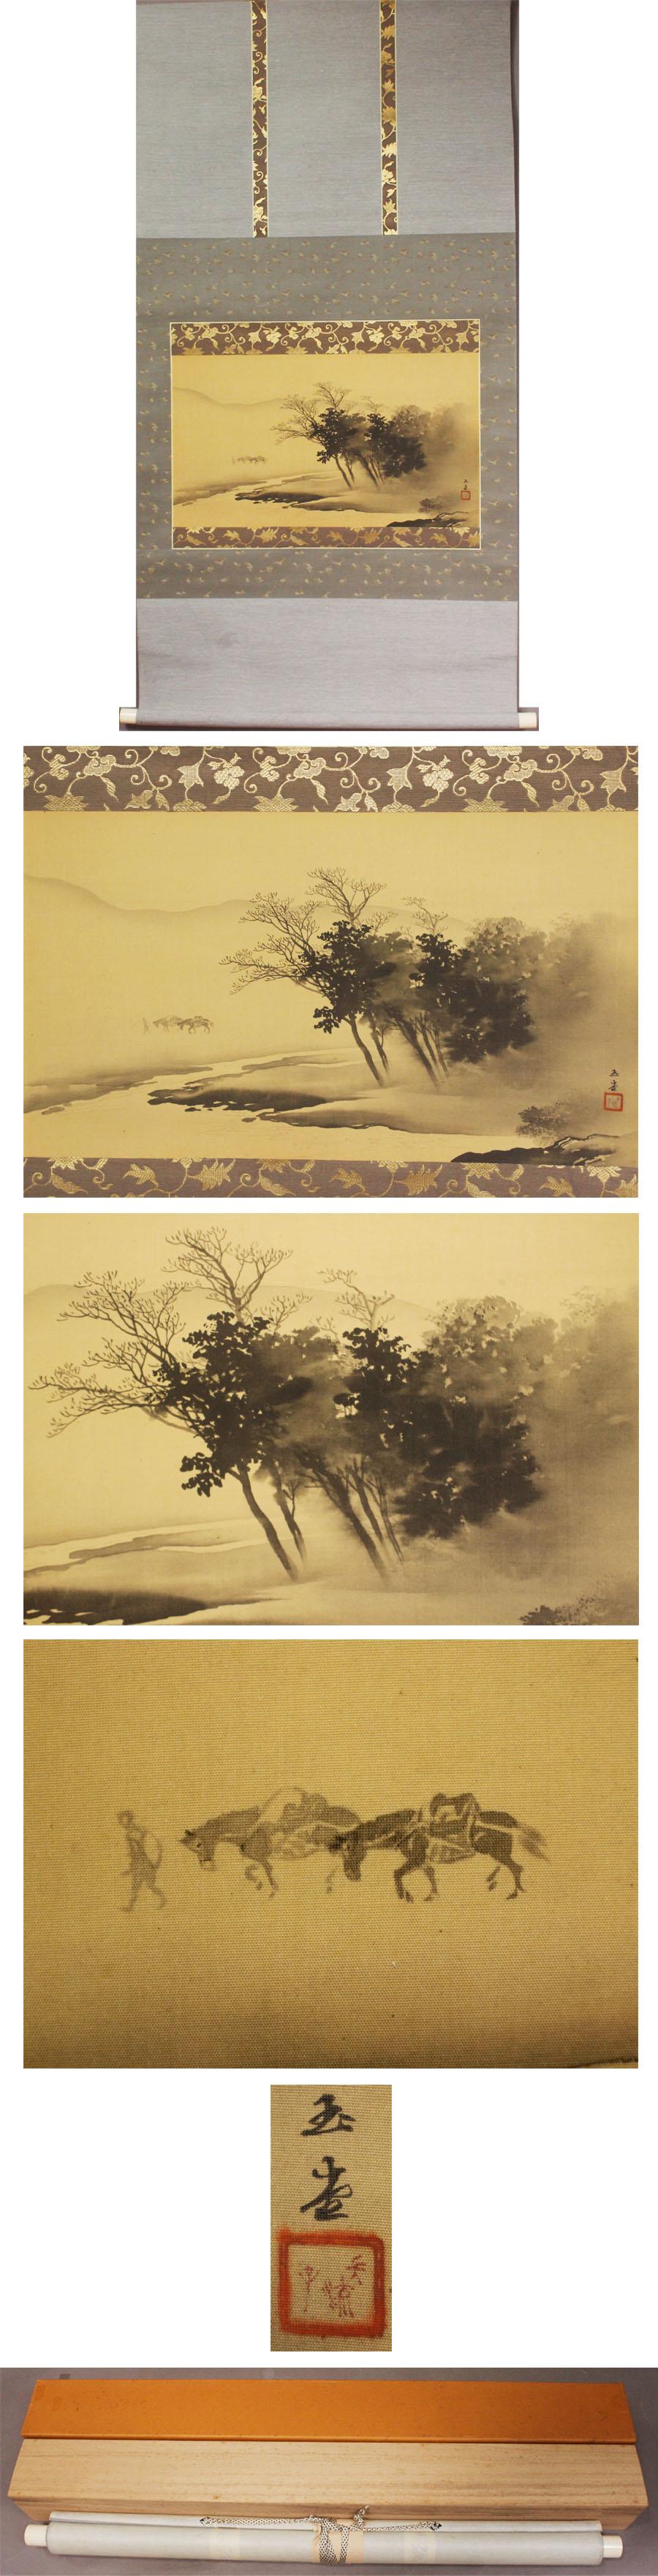 Silk Nihonga Japanese Painting 1900 Meiji Scroll Kawai Gyokudo Nanga School Lake Scen For Sale